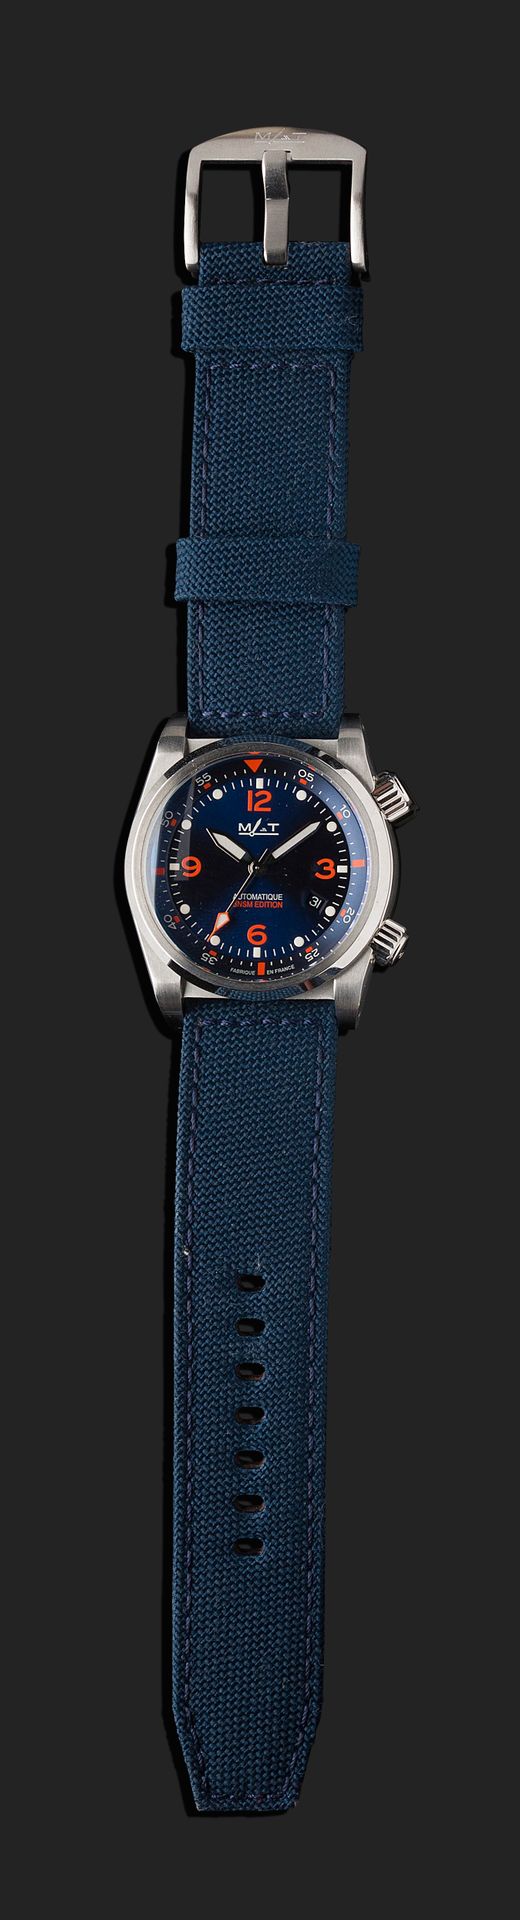 Null MAT
SNSM Edition. Number SKUAG7XLV036.
N° 36/300
Diving wristwatch in steel&hellip;